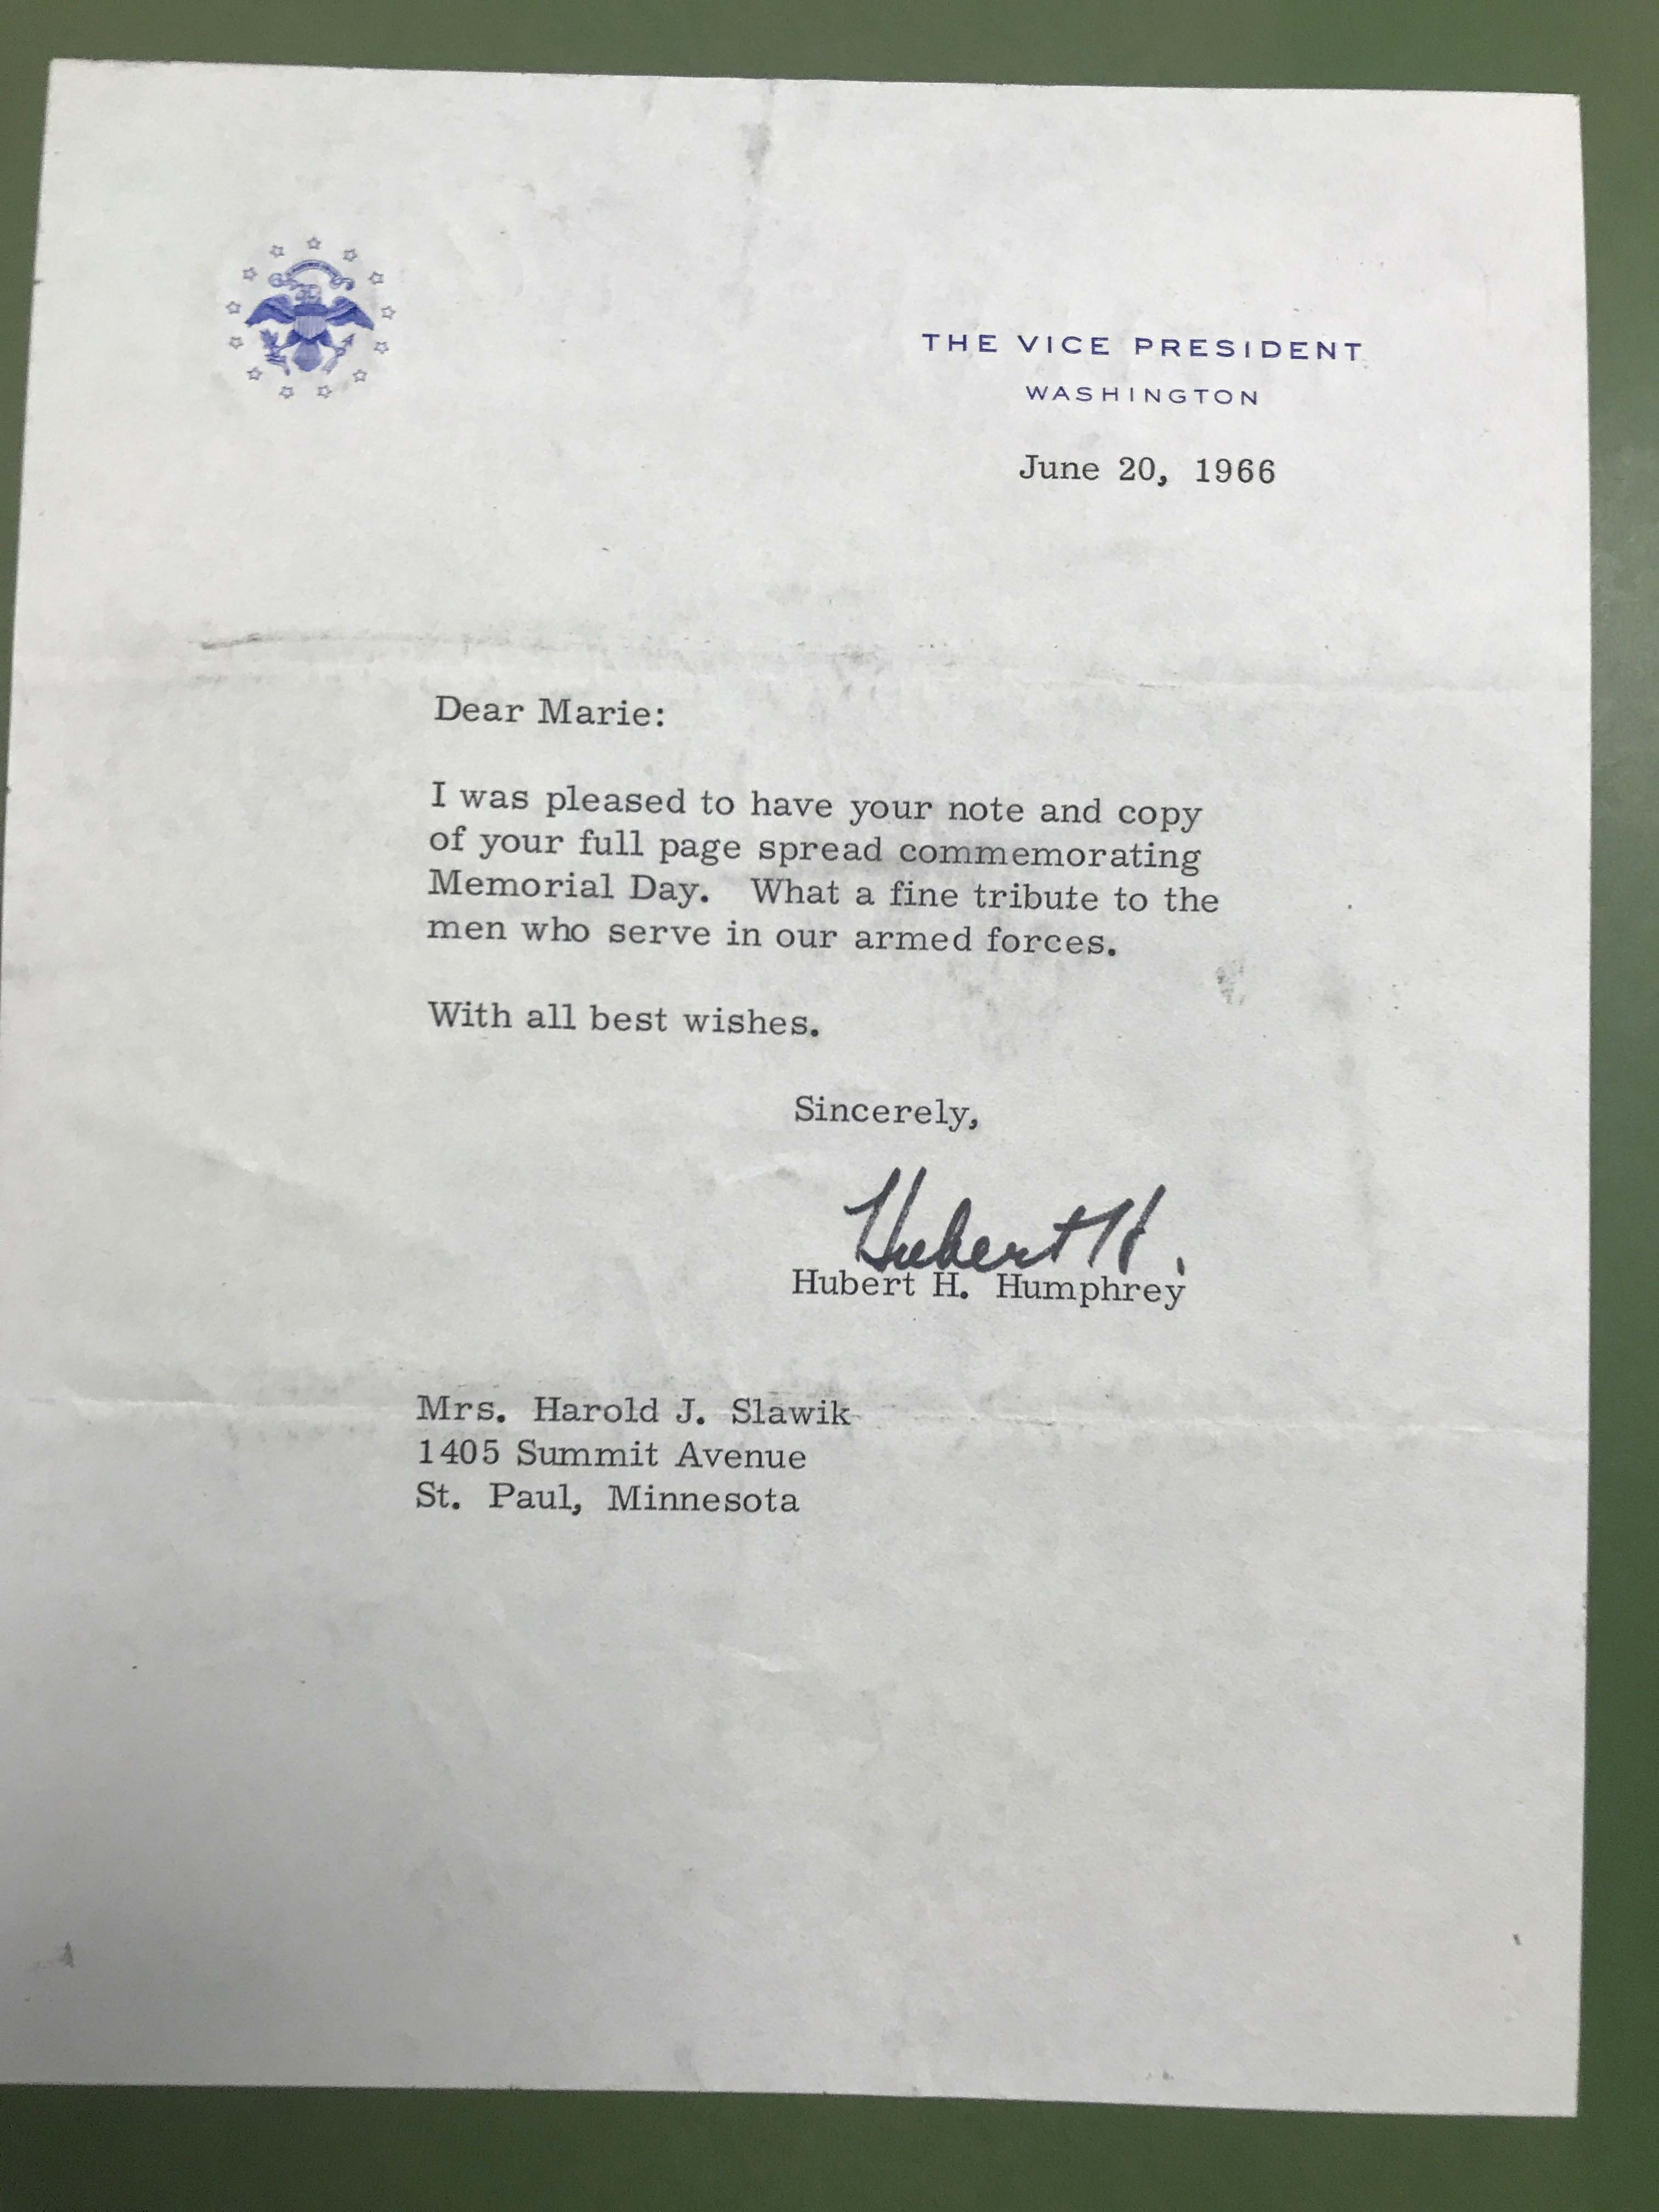 Letter from Hubert H. Humphrey